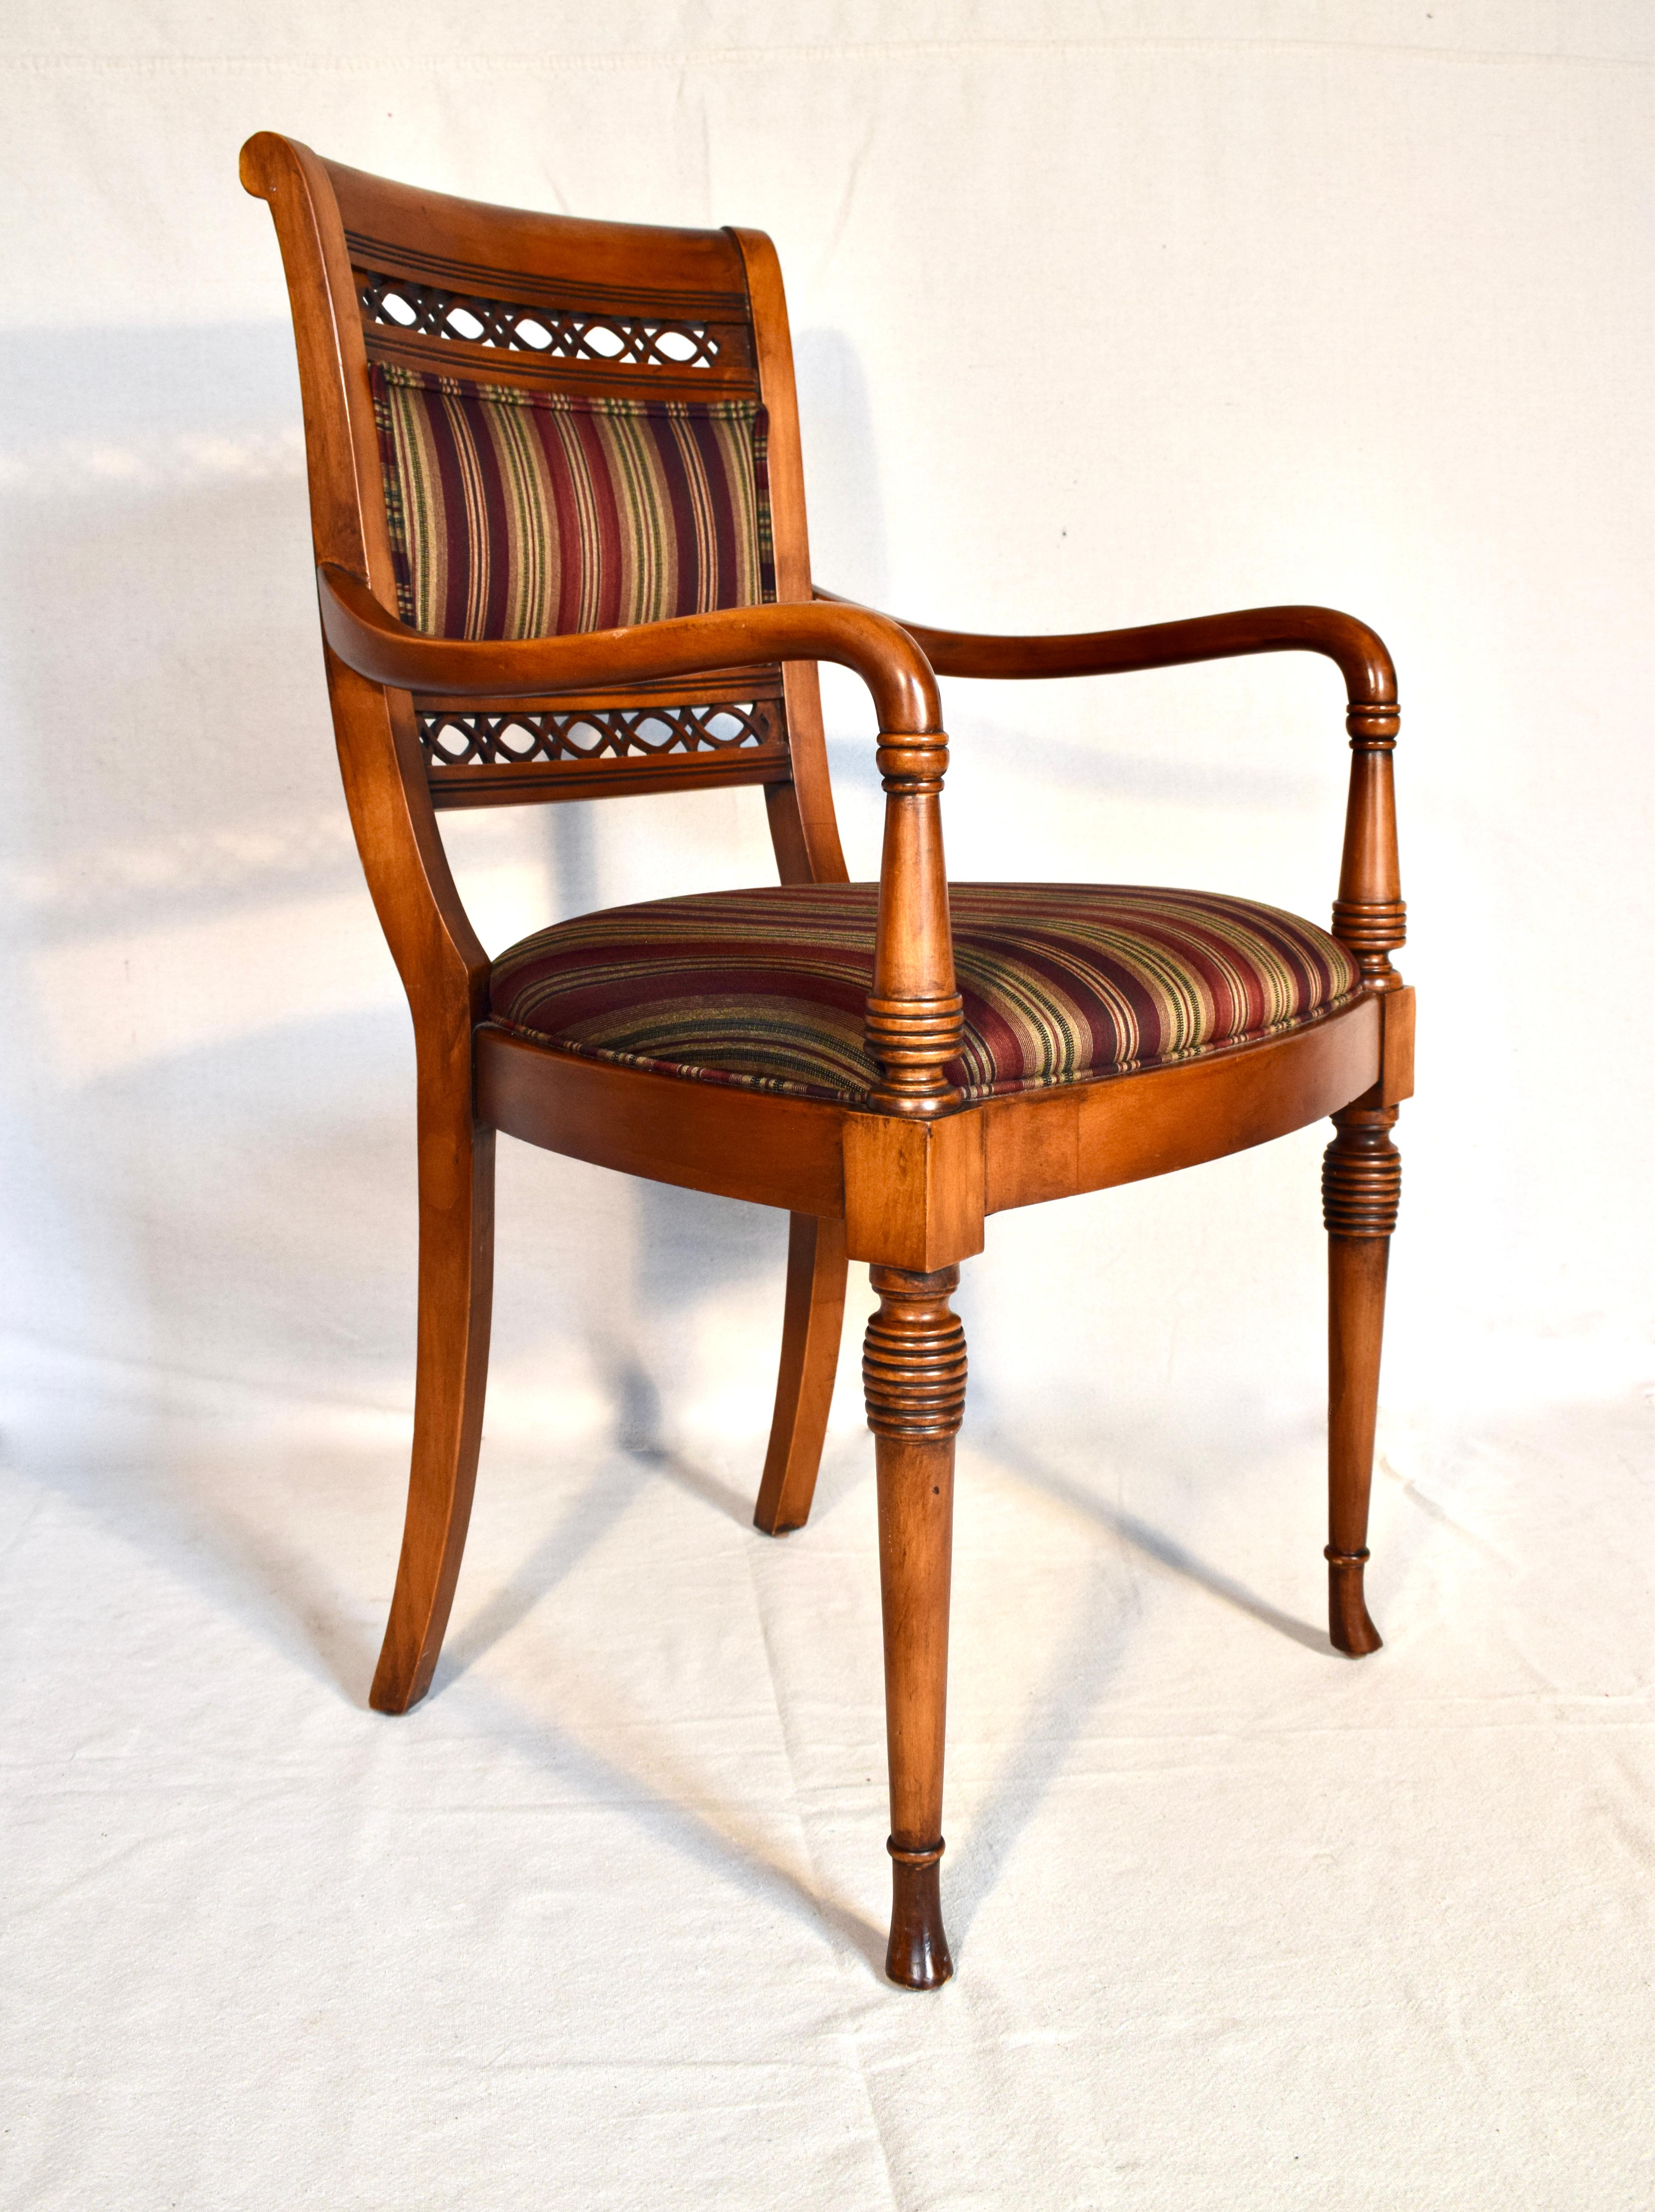 Erbstück Qualität handgefertigte Regency-Stil Sessel in Italien mit Original-Tags in selten, wenn überhaupt verwendet Zustand gemacht. Anmutige Linien und Drechselarbeiten in der Art und Qualität von Baker oder .Hickory Chair Möbeln. Sitz 19